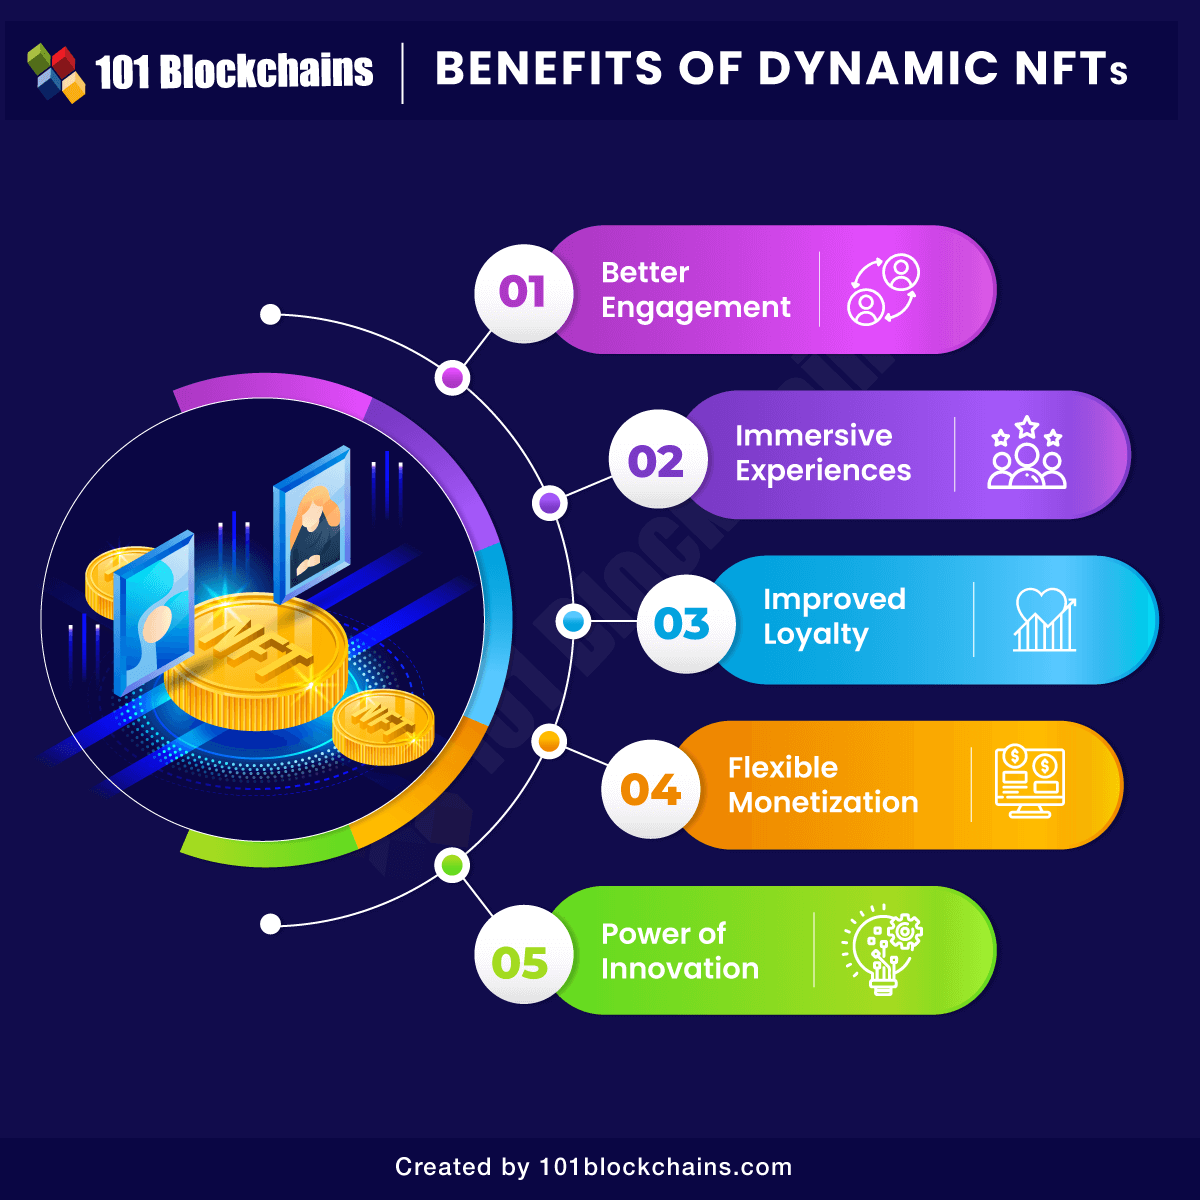 Benefits of Dynamic NFTs